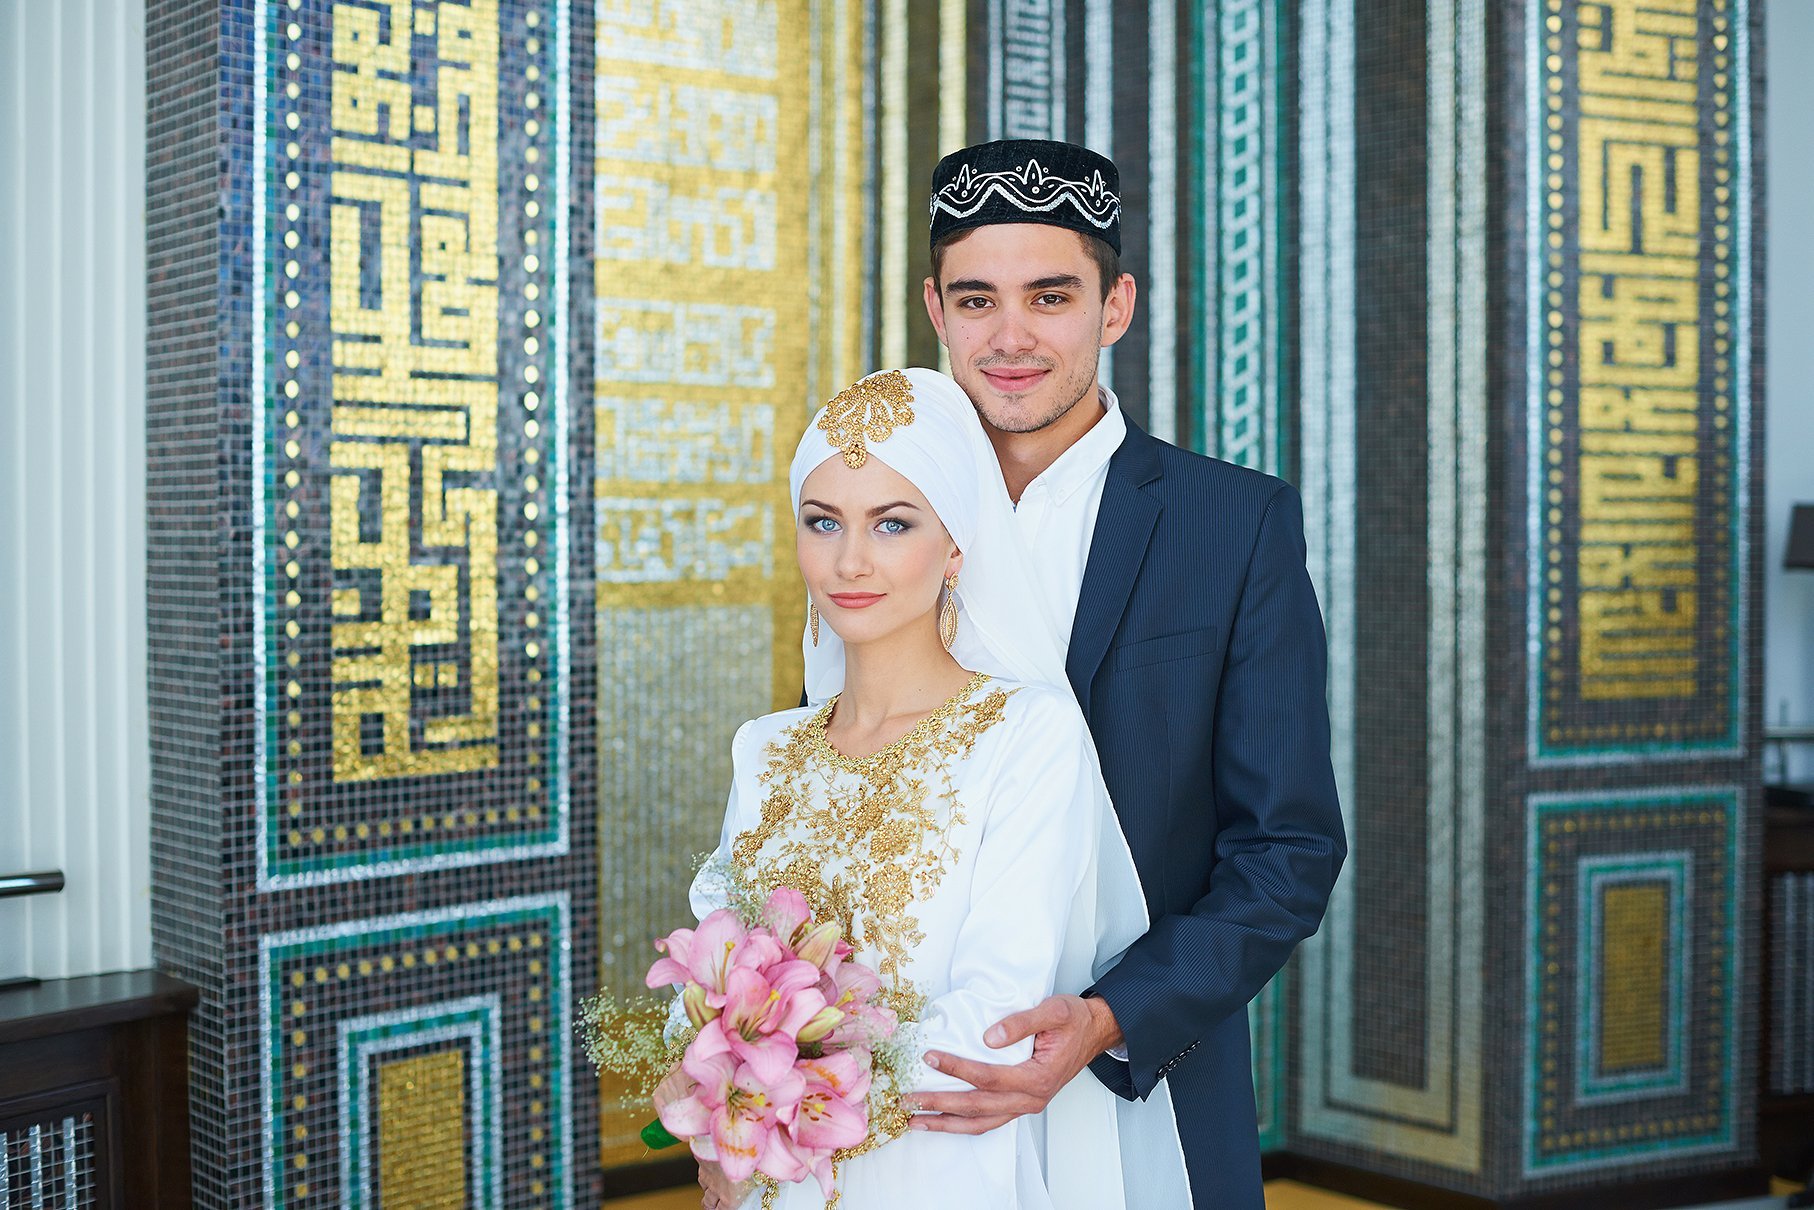 Узбекские мусульманские